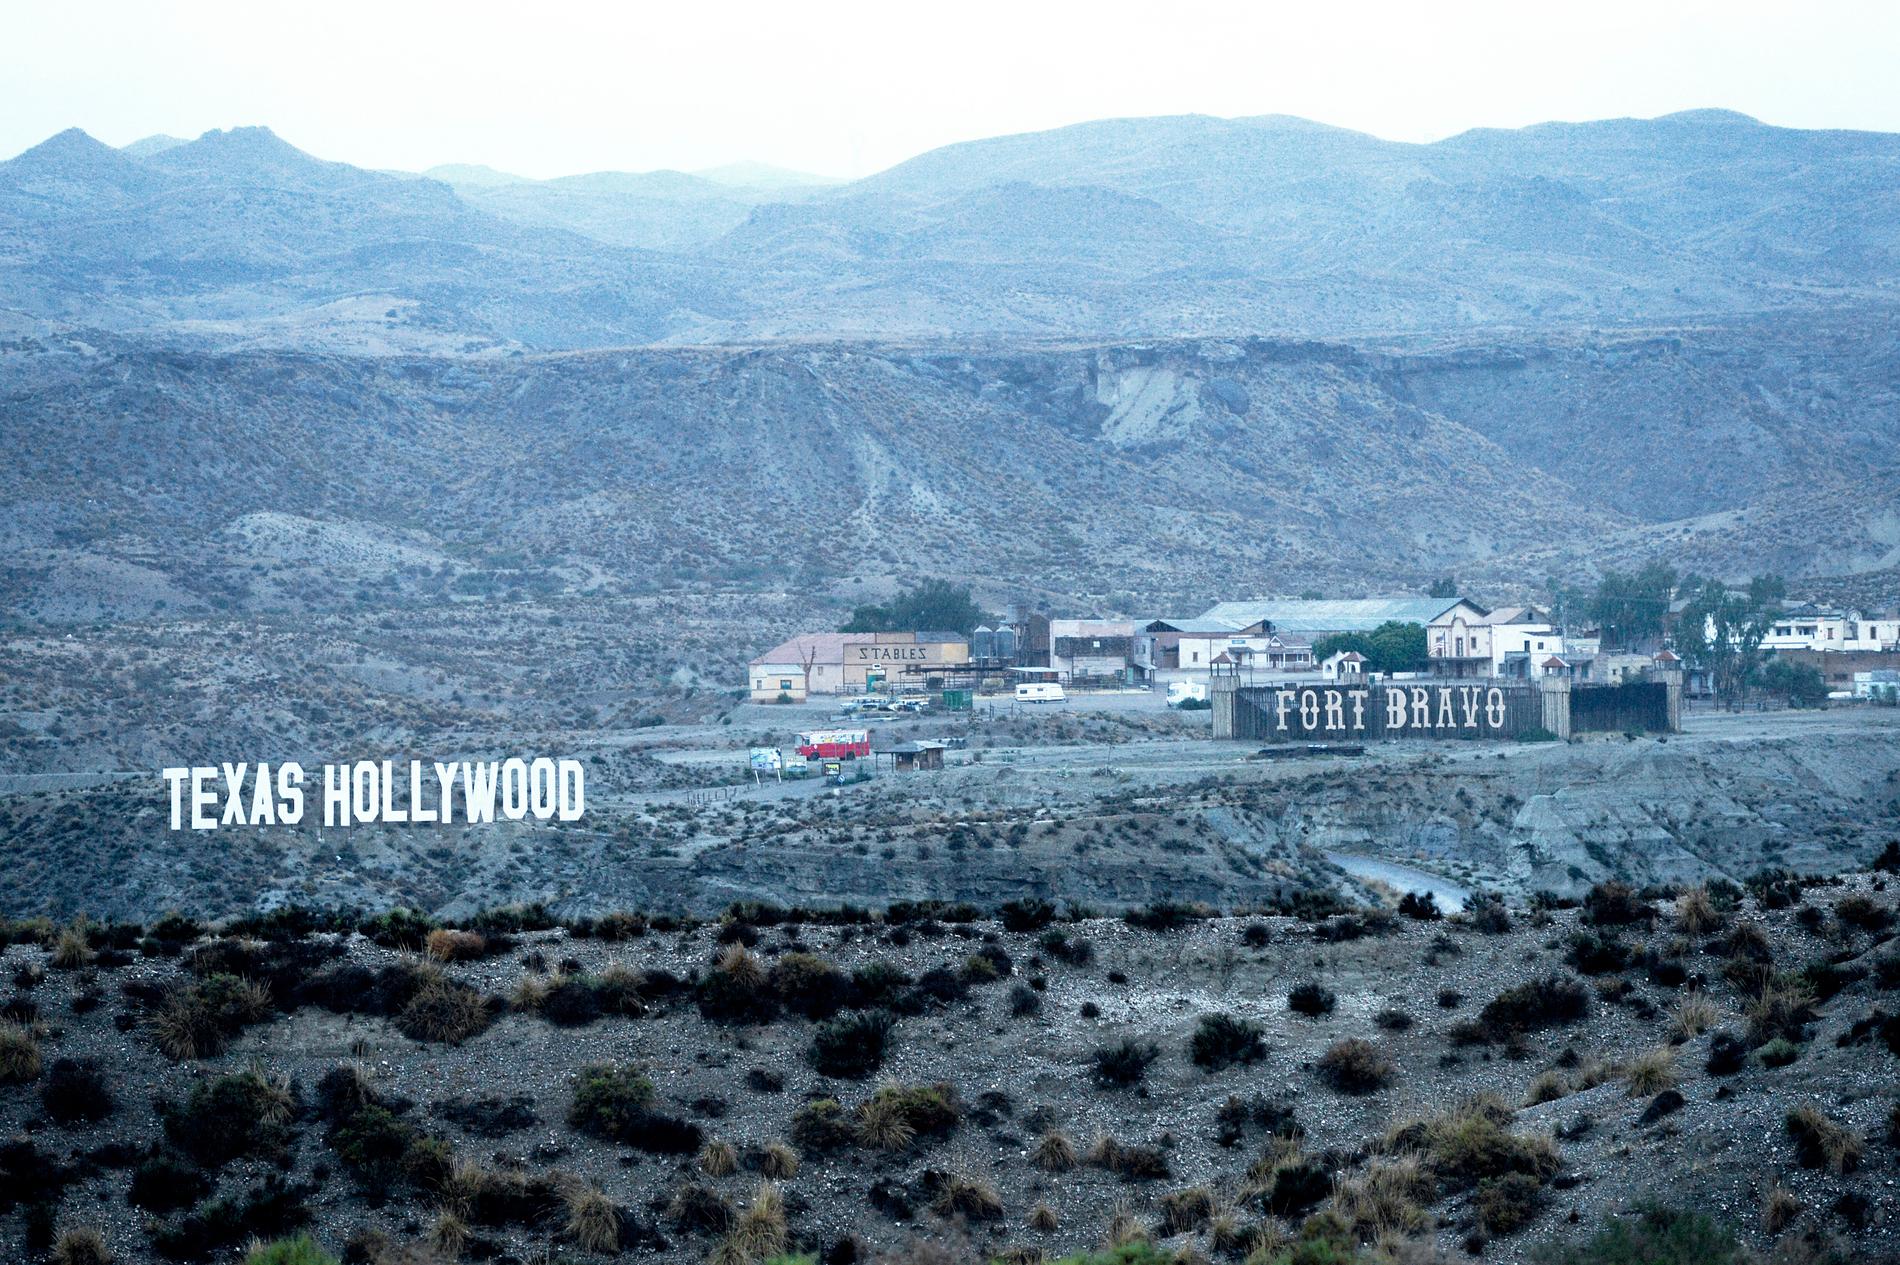 Europas enda öken, Tabernas i södra Spanien, rymmer den klassiska filmstudion Texas Hollywood, också känd som Fort Bravo. Här finns kulisser från såväl en mexikansk stad som ett amerikansk vilda västern-samhälle, dessutom ett fort och en indianby.